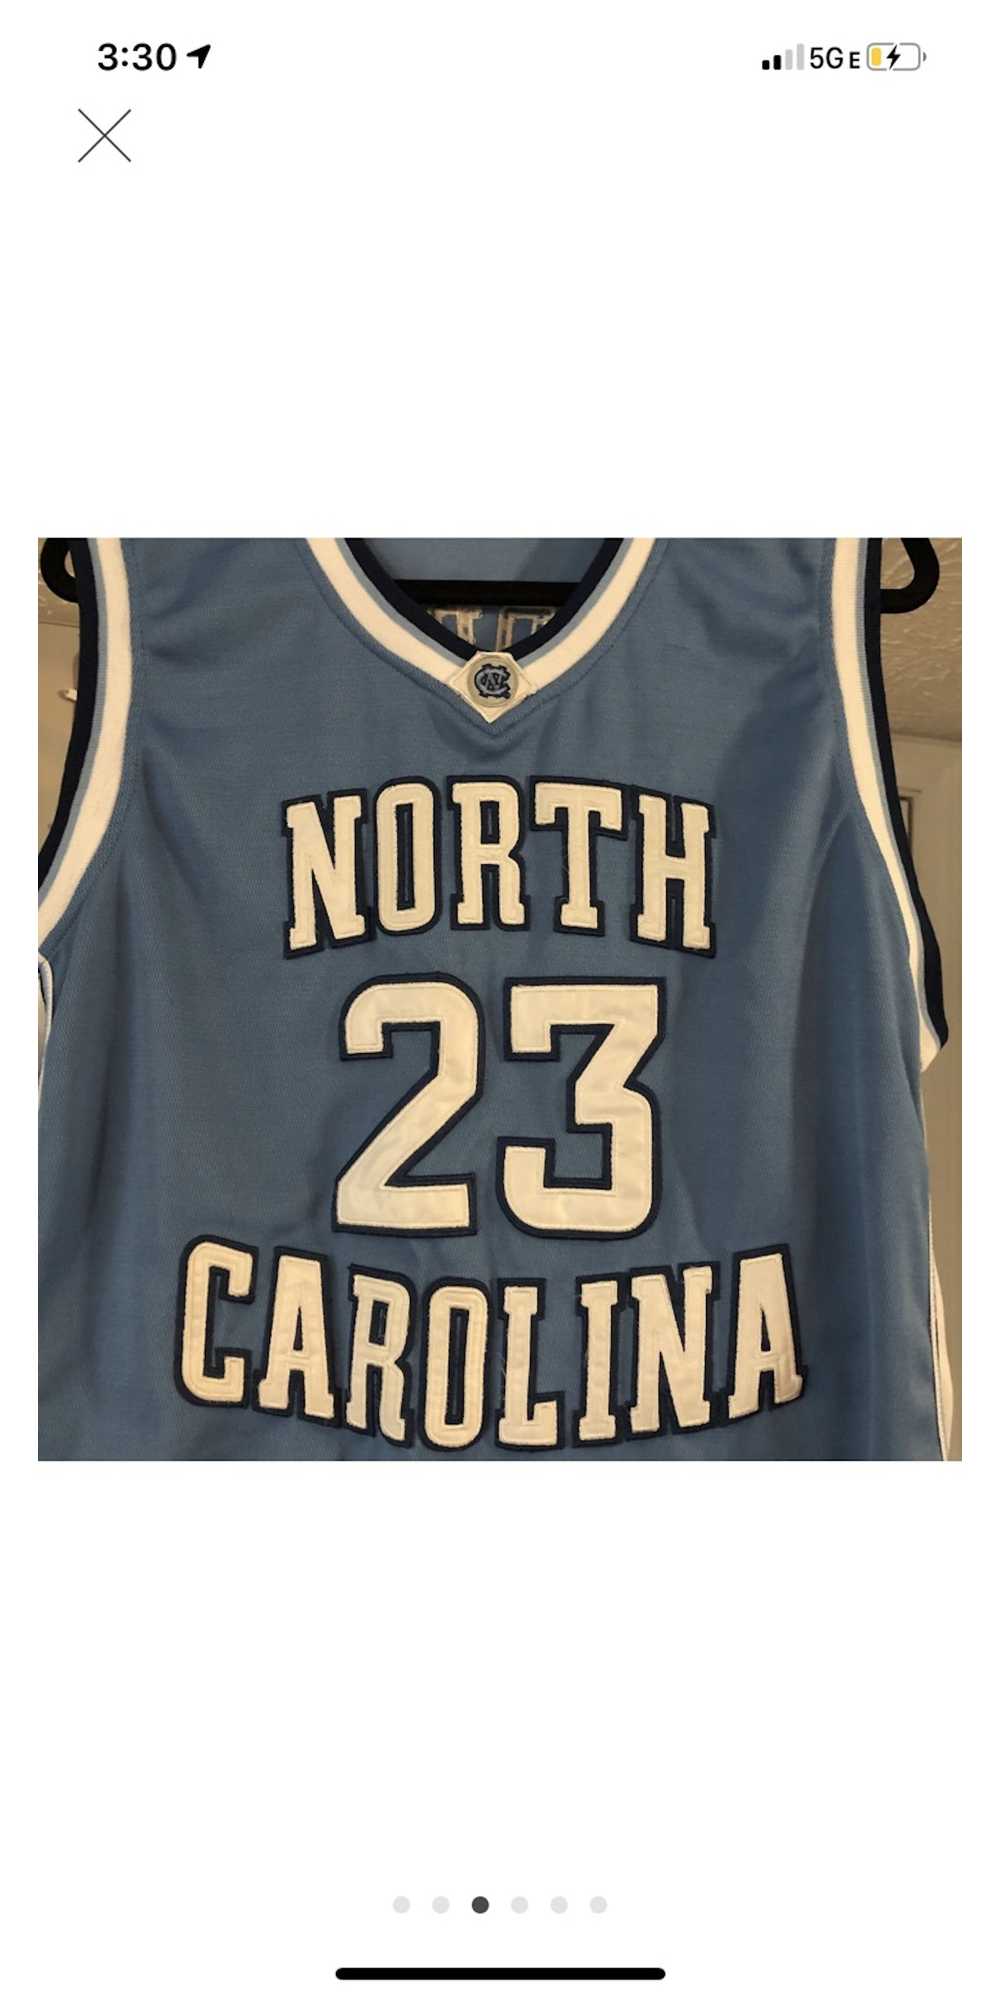 Nike Jordan North Carolina collage Jersey - image 2